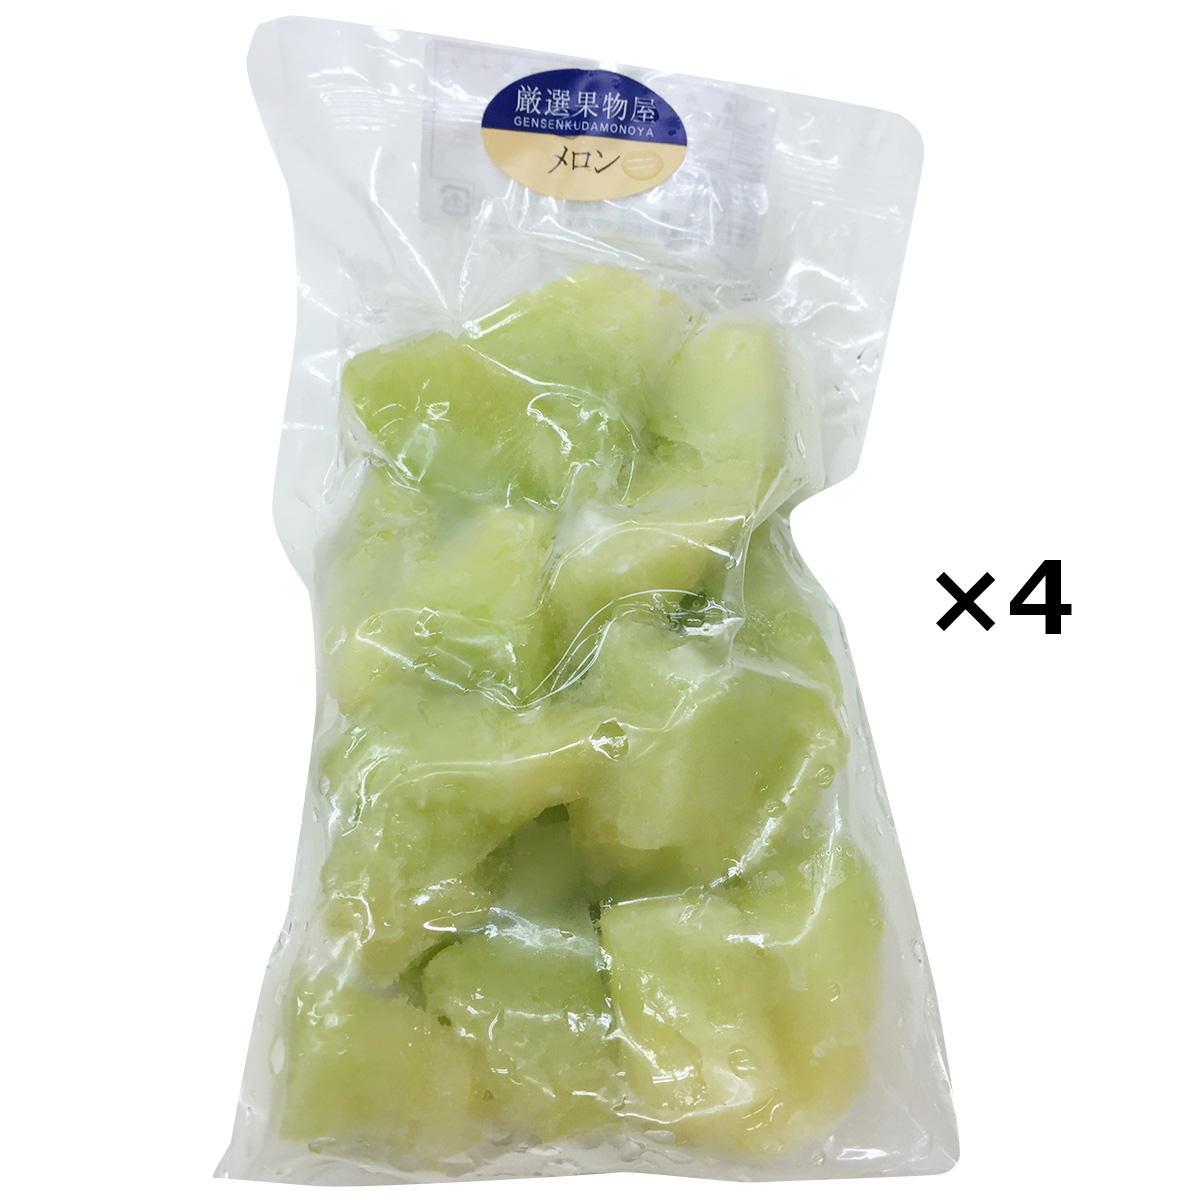 NORUCAの「冷凍フルーツ 国産メロン」4袋セットです。果物のプロの目で厳選した国産のメロンを短い旬の時期に凍らせました。皮をむき一口サイズにカットしております。真空パック加工後、急速冷凍していますので、果実本来の風味と味覚が楽しめます。...